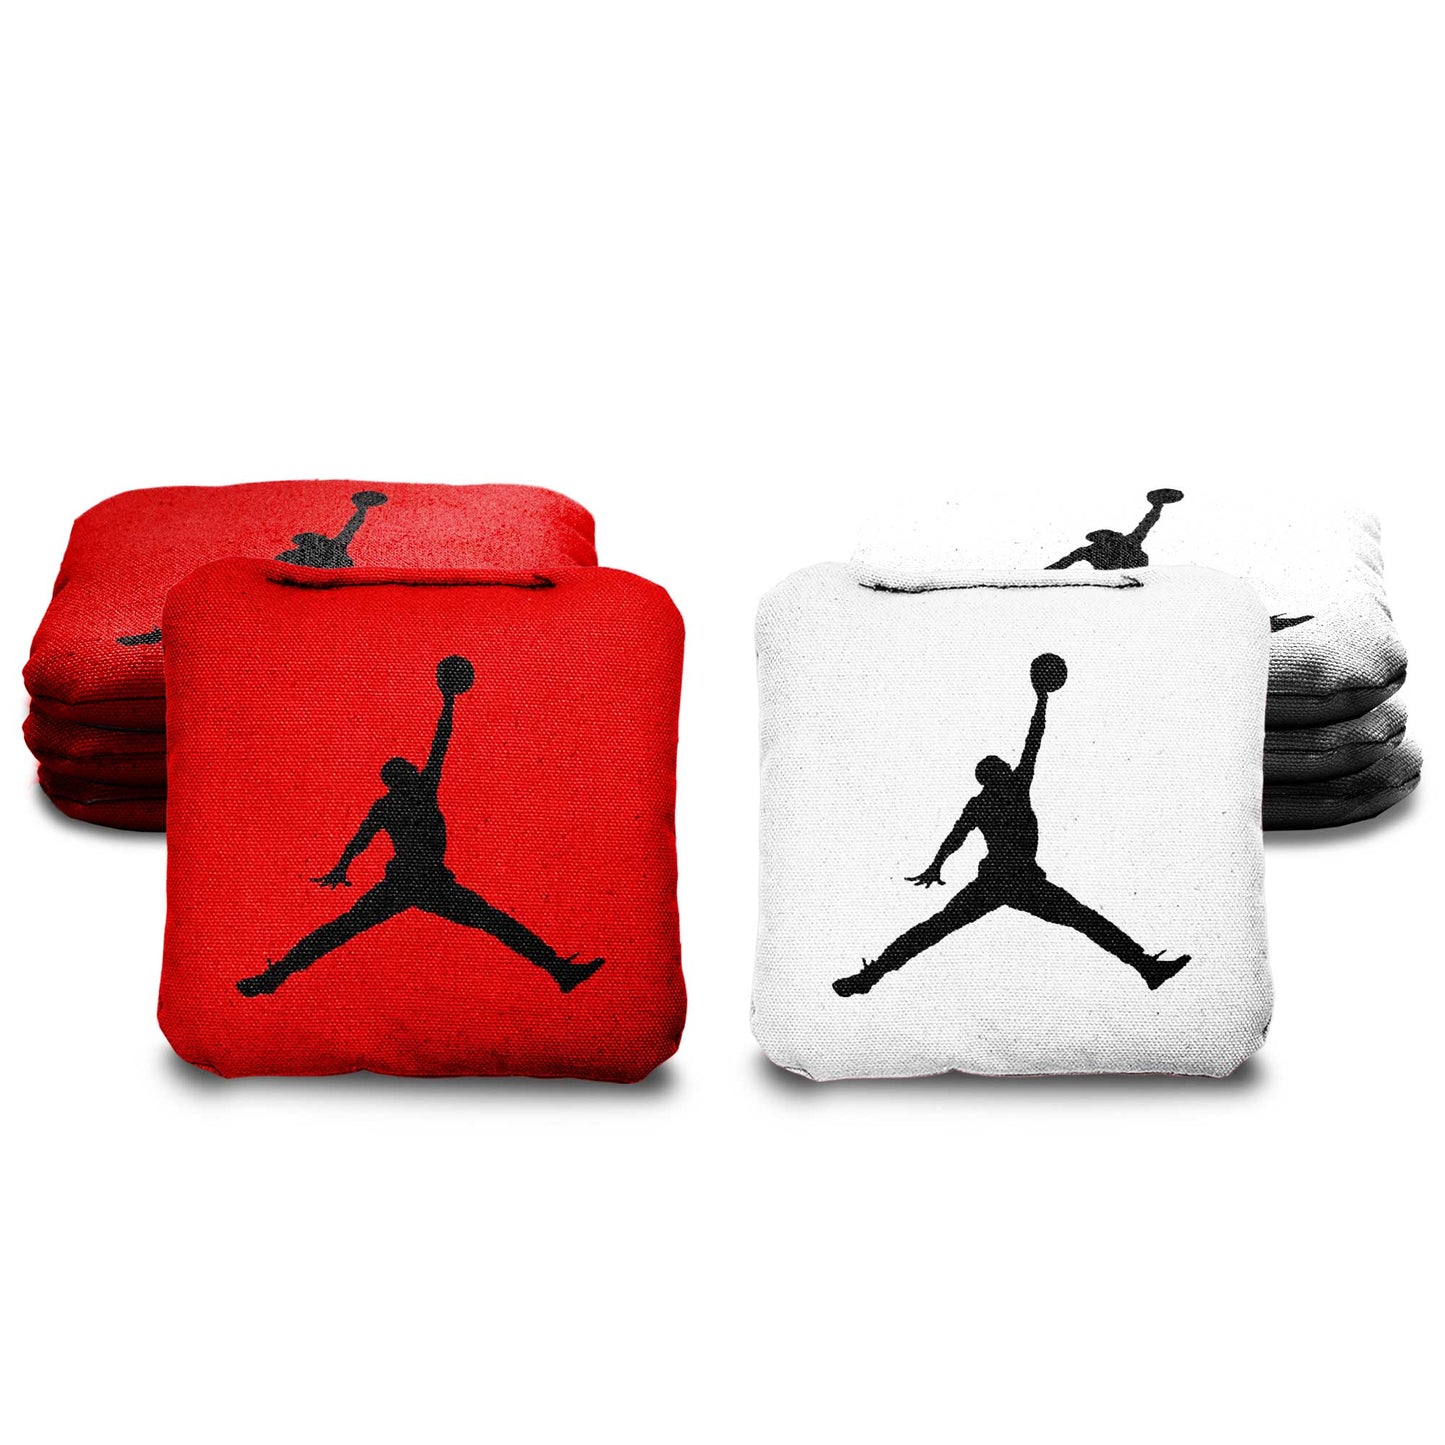 The Jordans - 8 Cornhole Bags